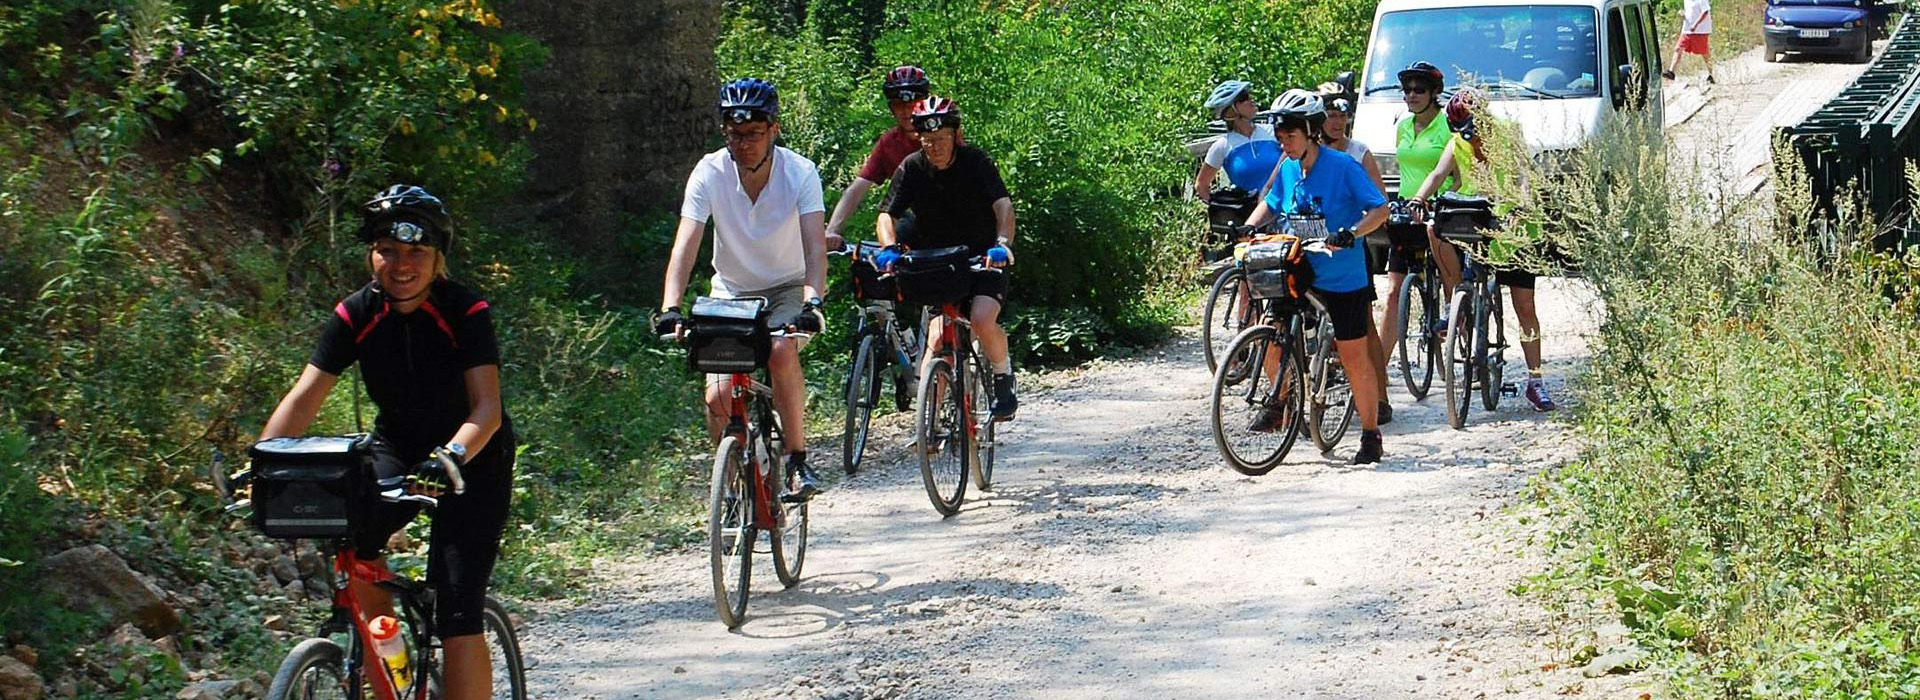 Cycling Balkans guided holiday - Cycling